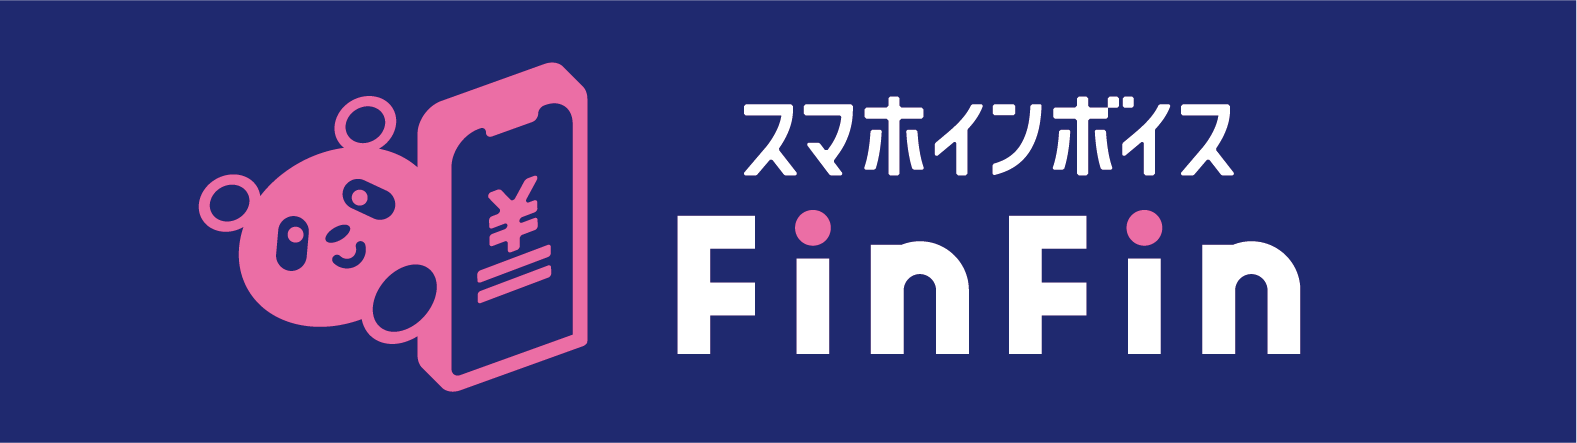 会計バンク株式会社 PC不要、アプリだけで確定申告 FinFinスマホインボイス ロゴ